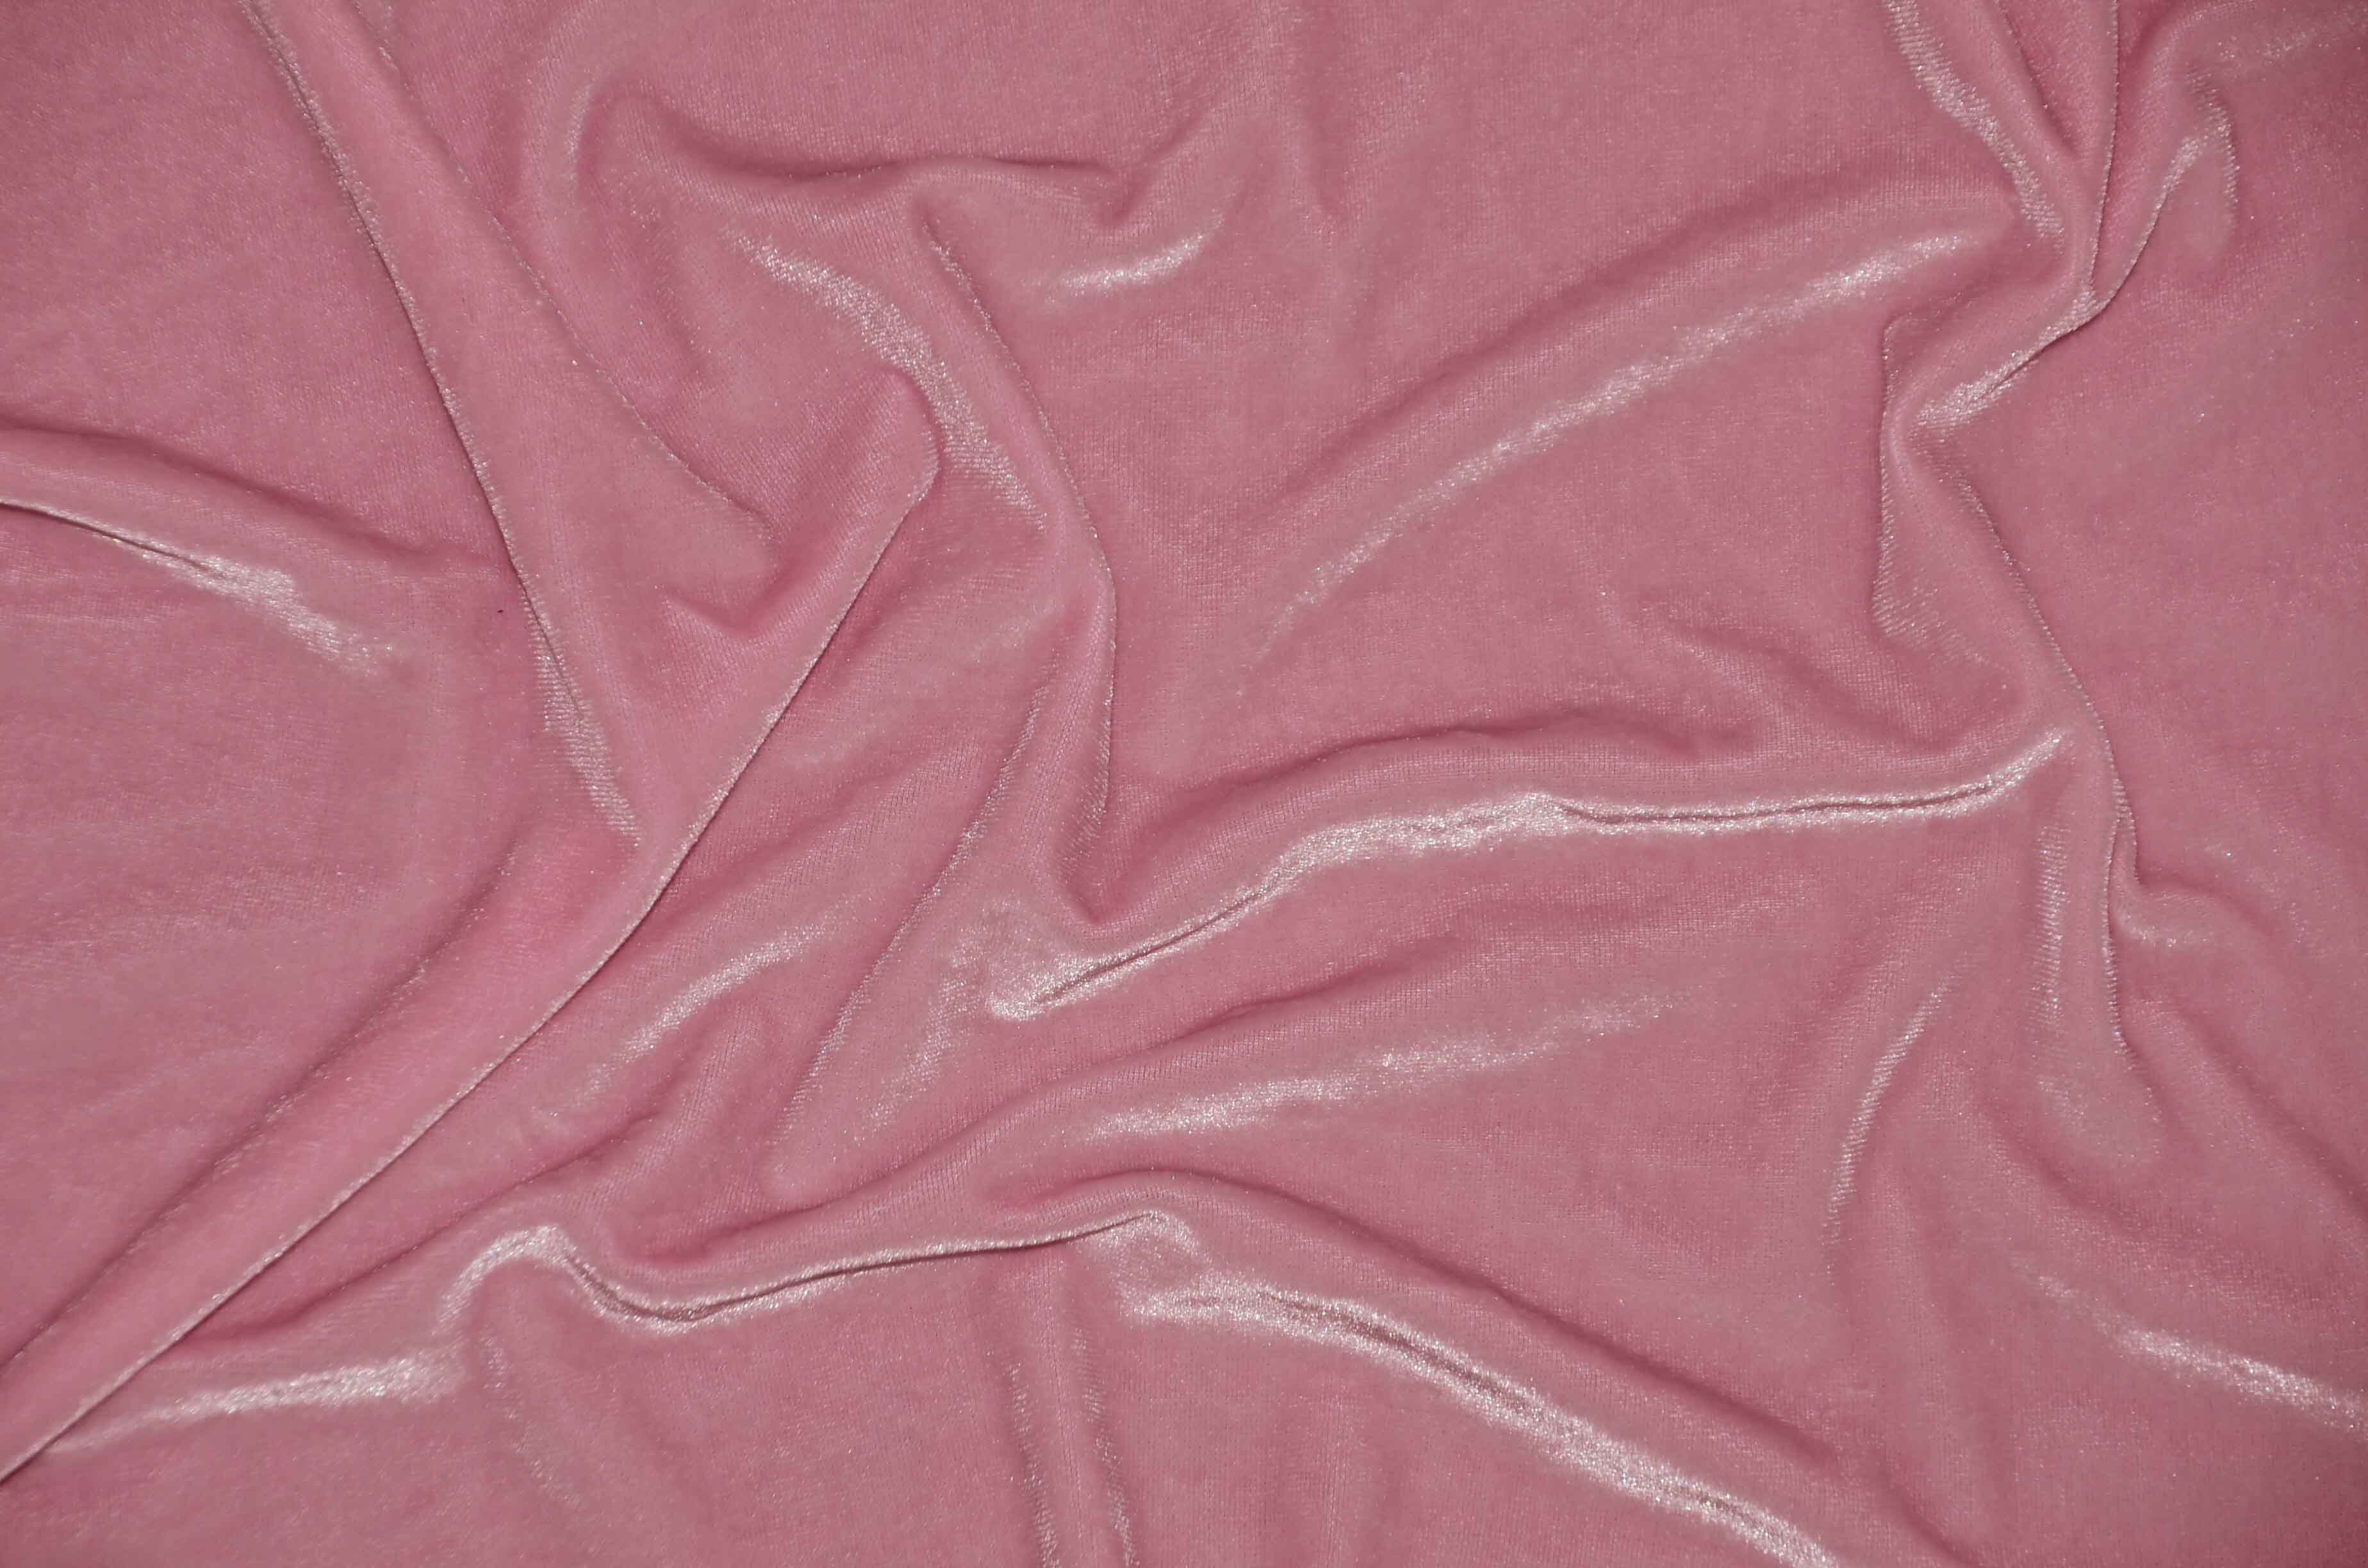 LV Designer Embossed Stretch Velvet Fabric YSSR272 for Luxury